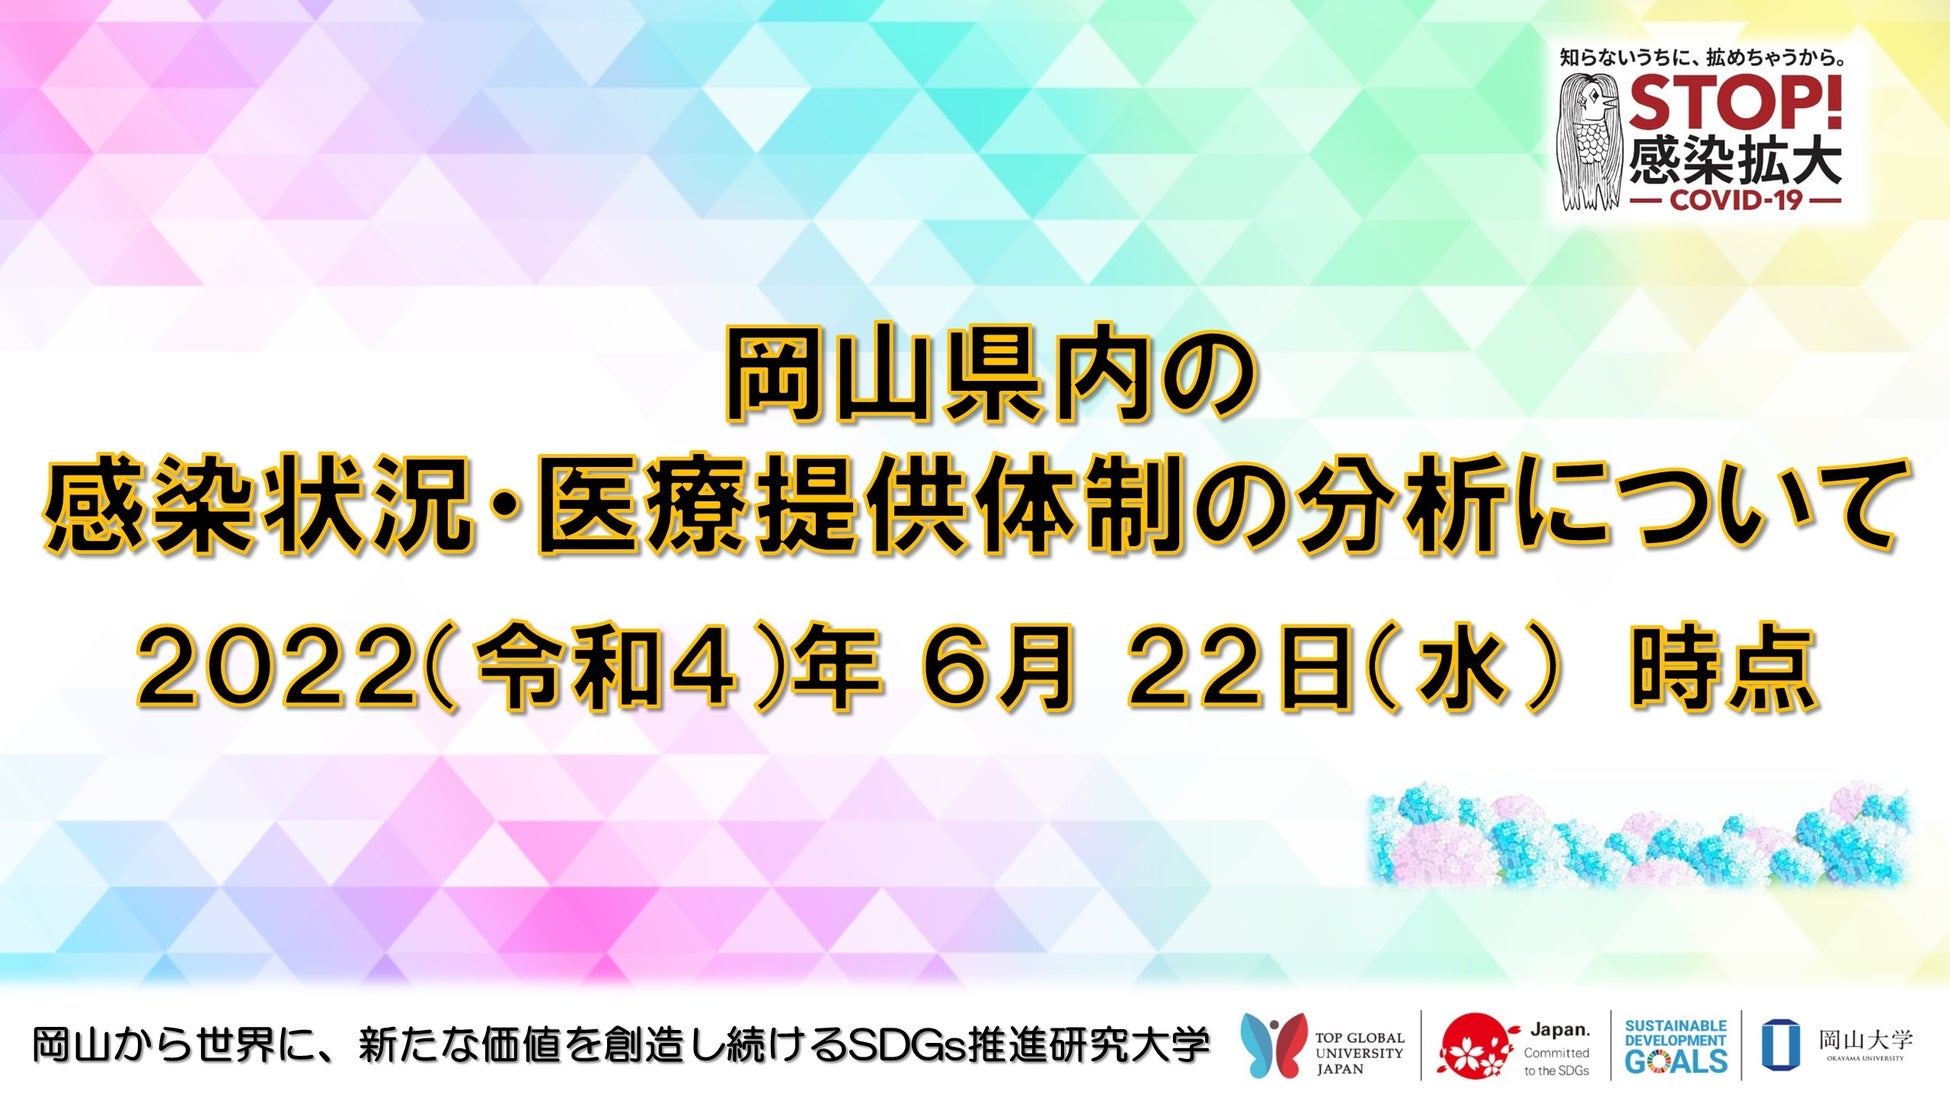 SHINAL/ 新宿マルイ、福岡newmeにて、期間限定でモリンガティーを販売!!